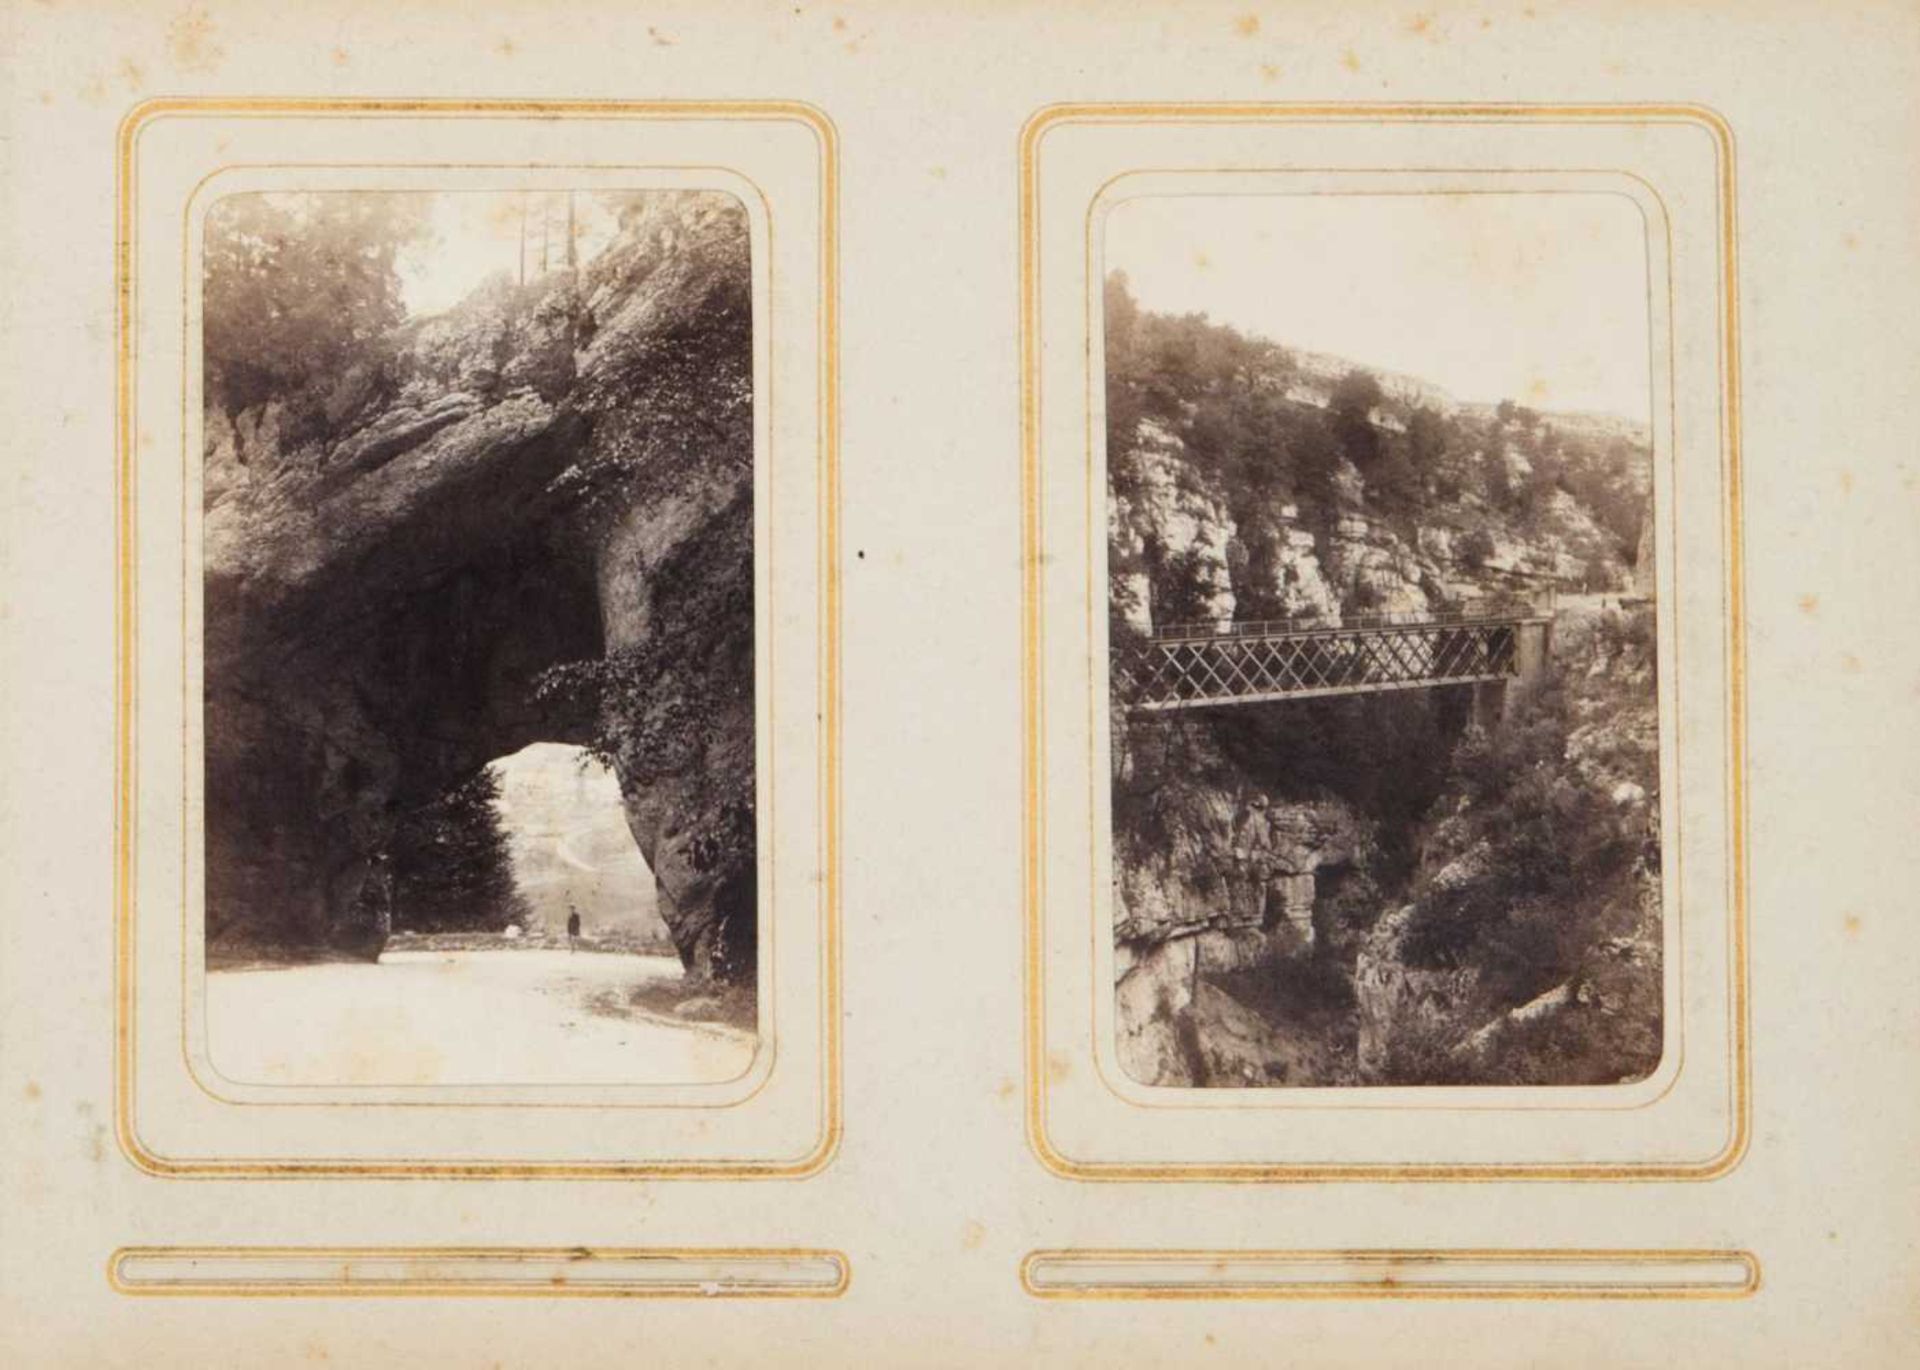 album de photographies anciennes représentant des grandes villes européennes, époque Napoléon III - Bild 2 aus 3